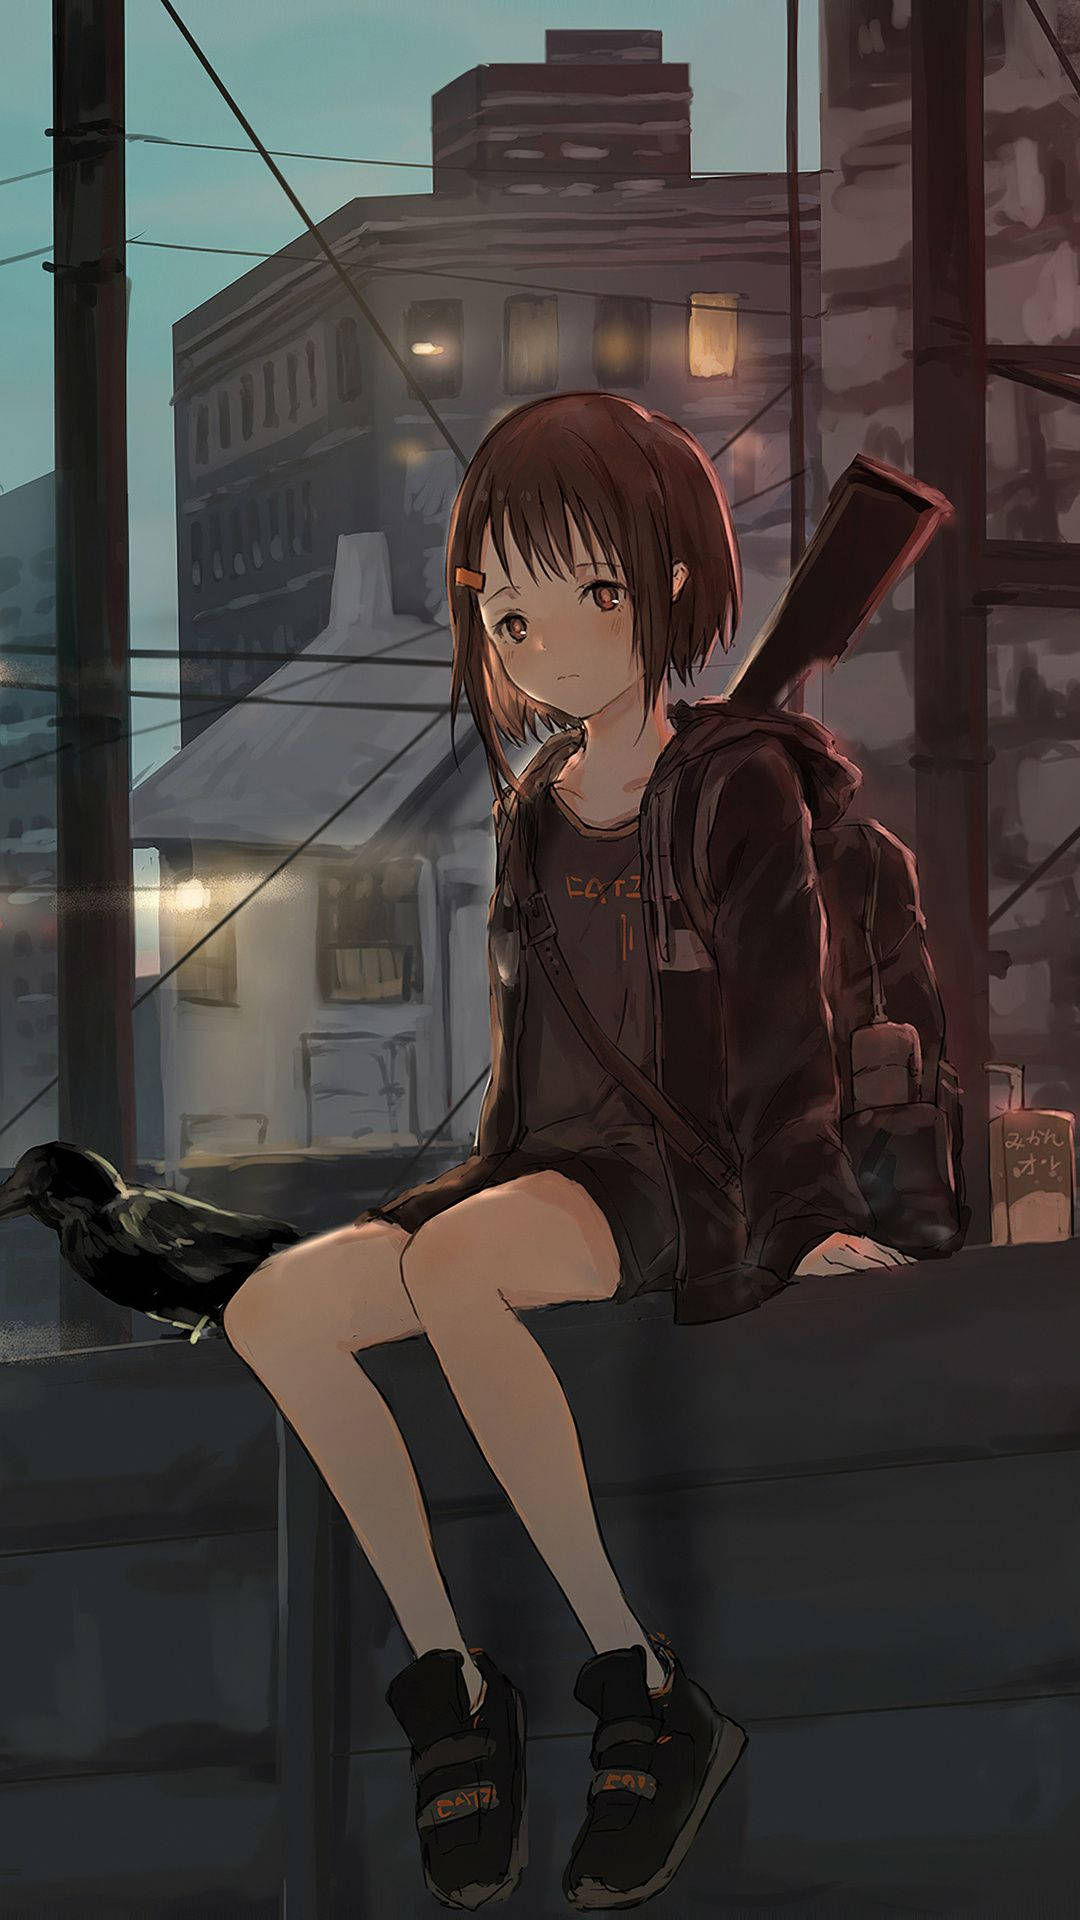 Download Sad Anime Girl On Ledge Wallpaper